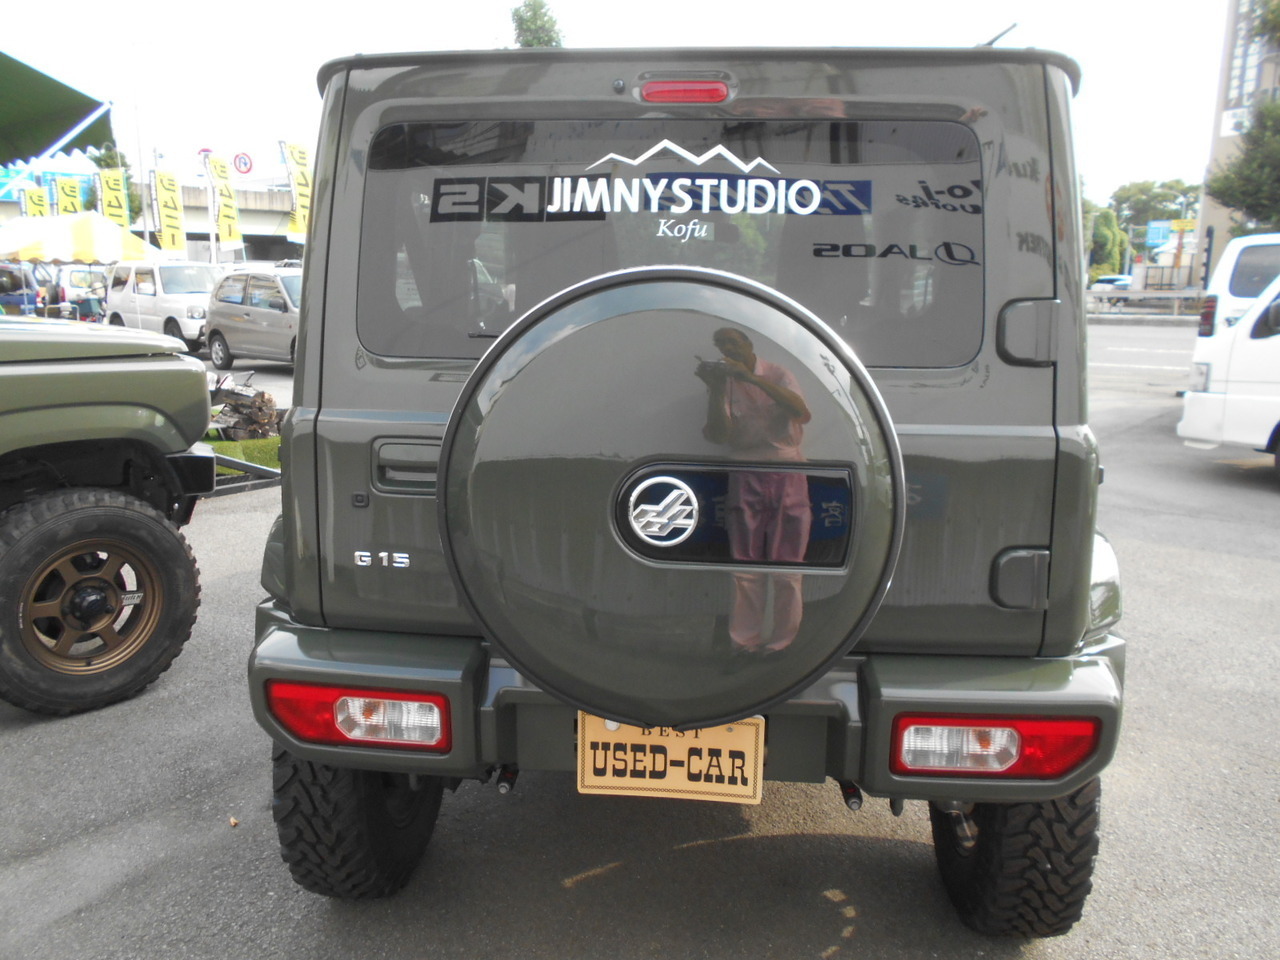 ジムニーシエラ 1300 エルク 3inリフトアップ 中古車在庫情報 | ジムニー専門店『ジムニースタジオ』